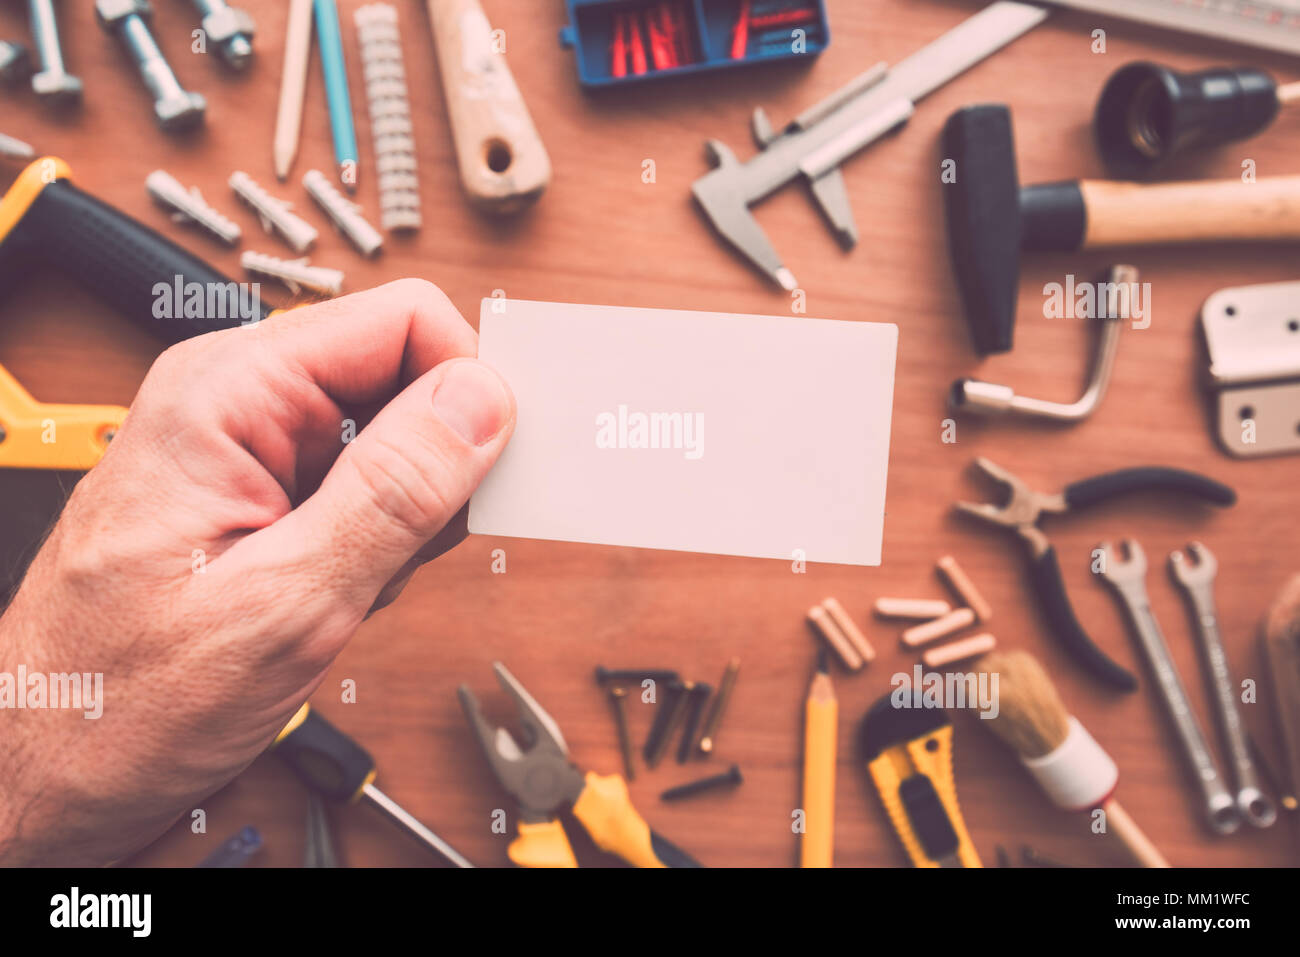 Handyman blank business card comme copie espace atelier sur table avec l'entretien et les outils du projet de correction Banque D'Images